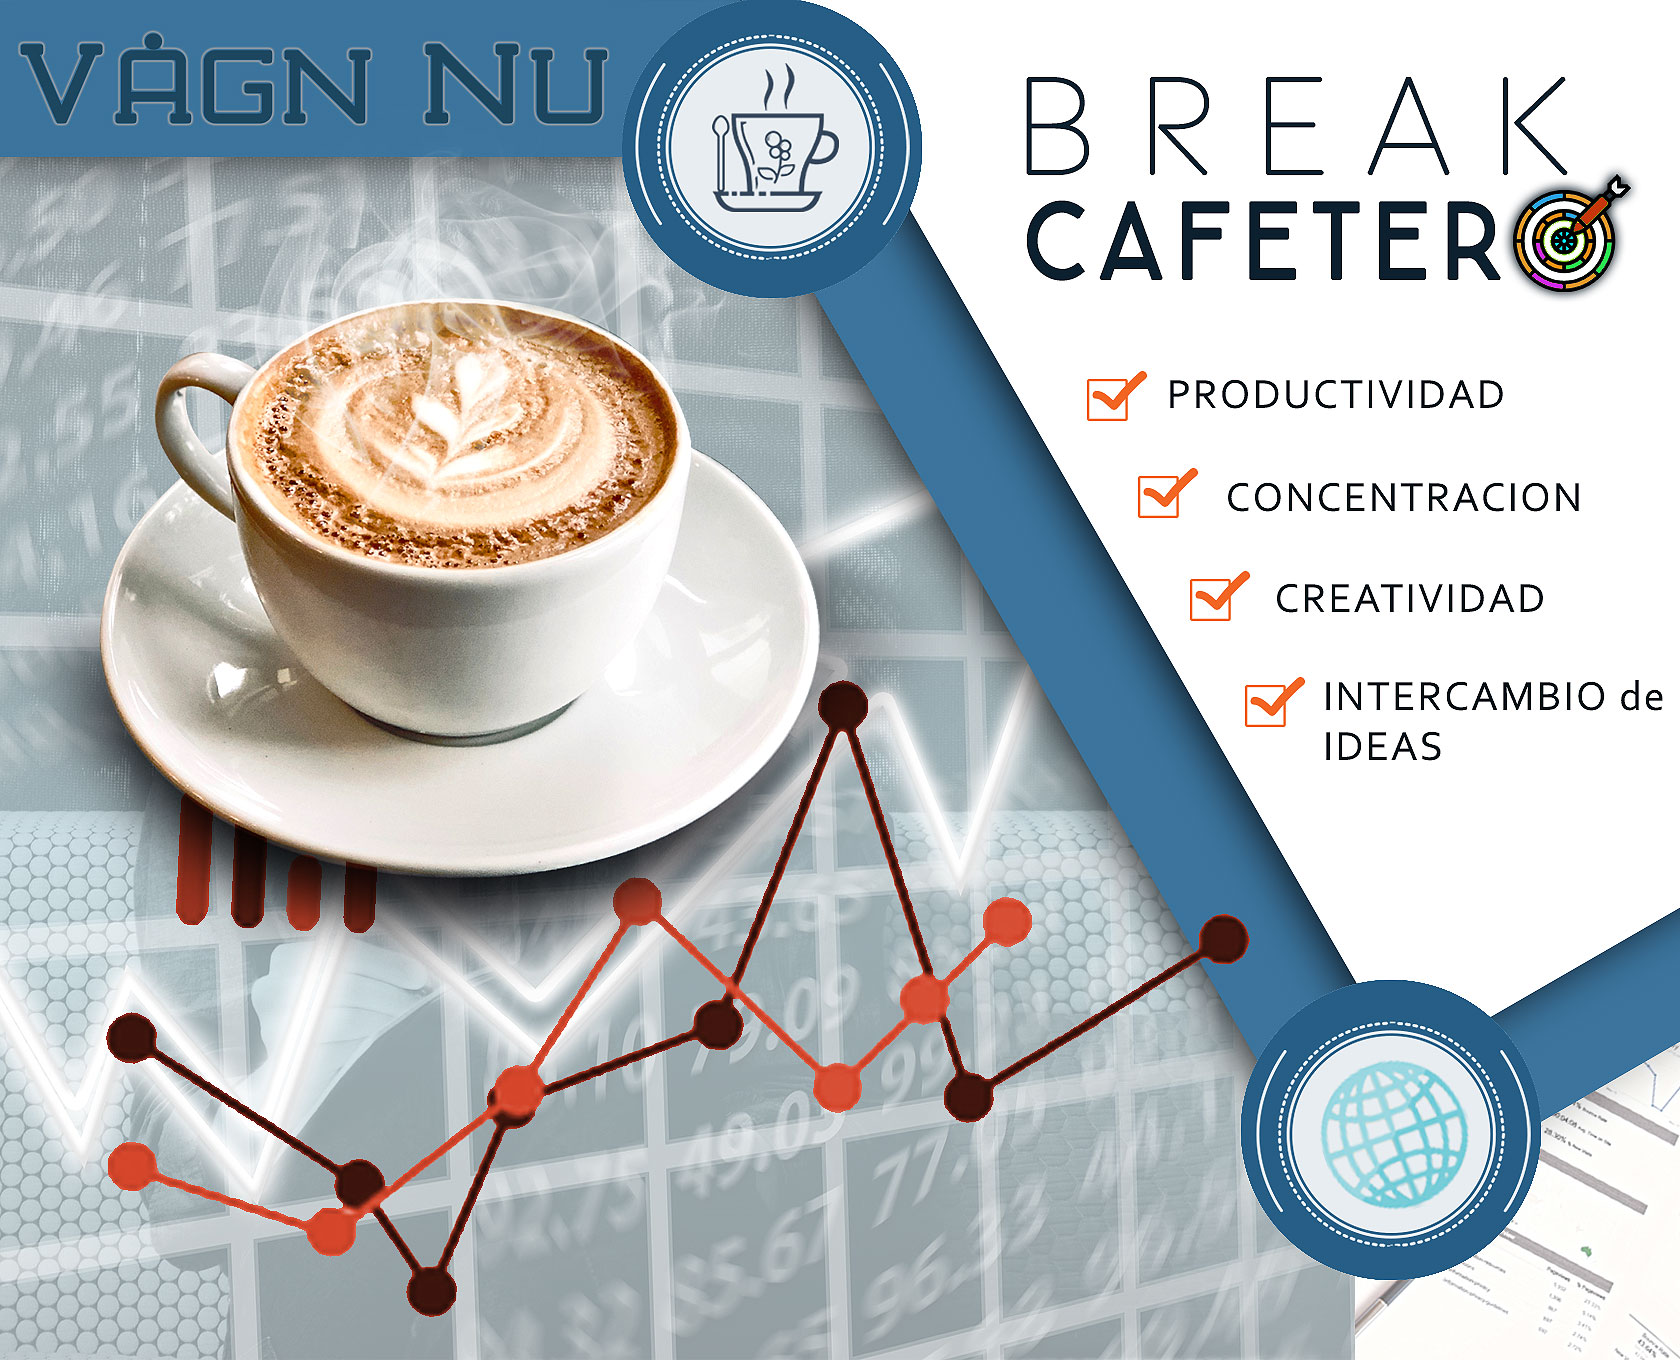 El Break del Café" y Como Aumentar Tu Productividad.